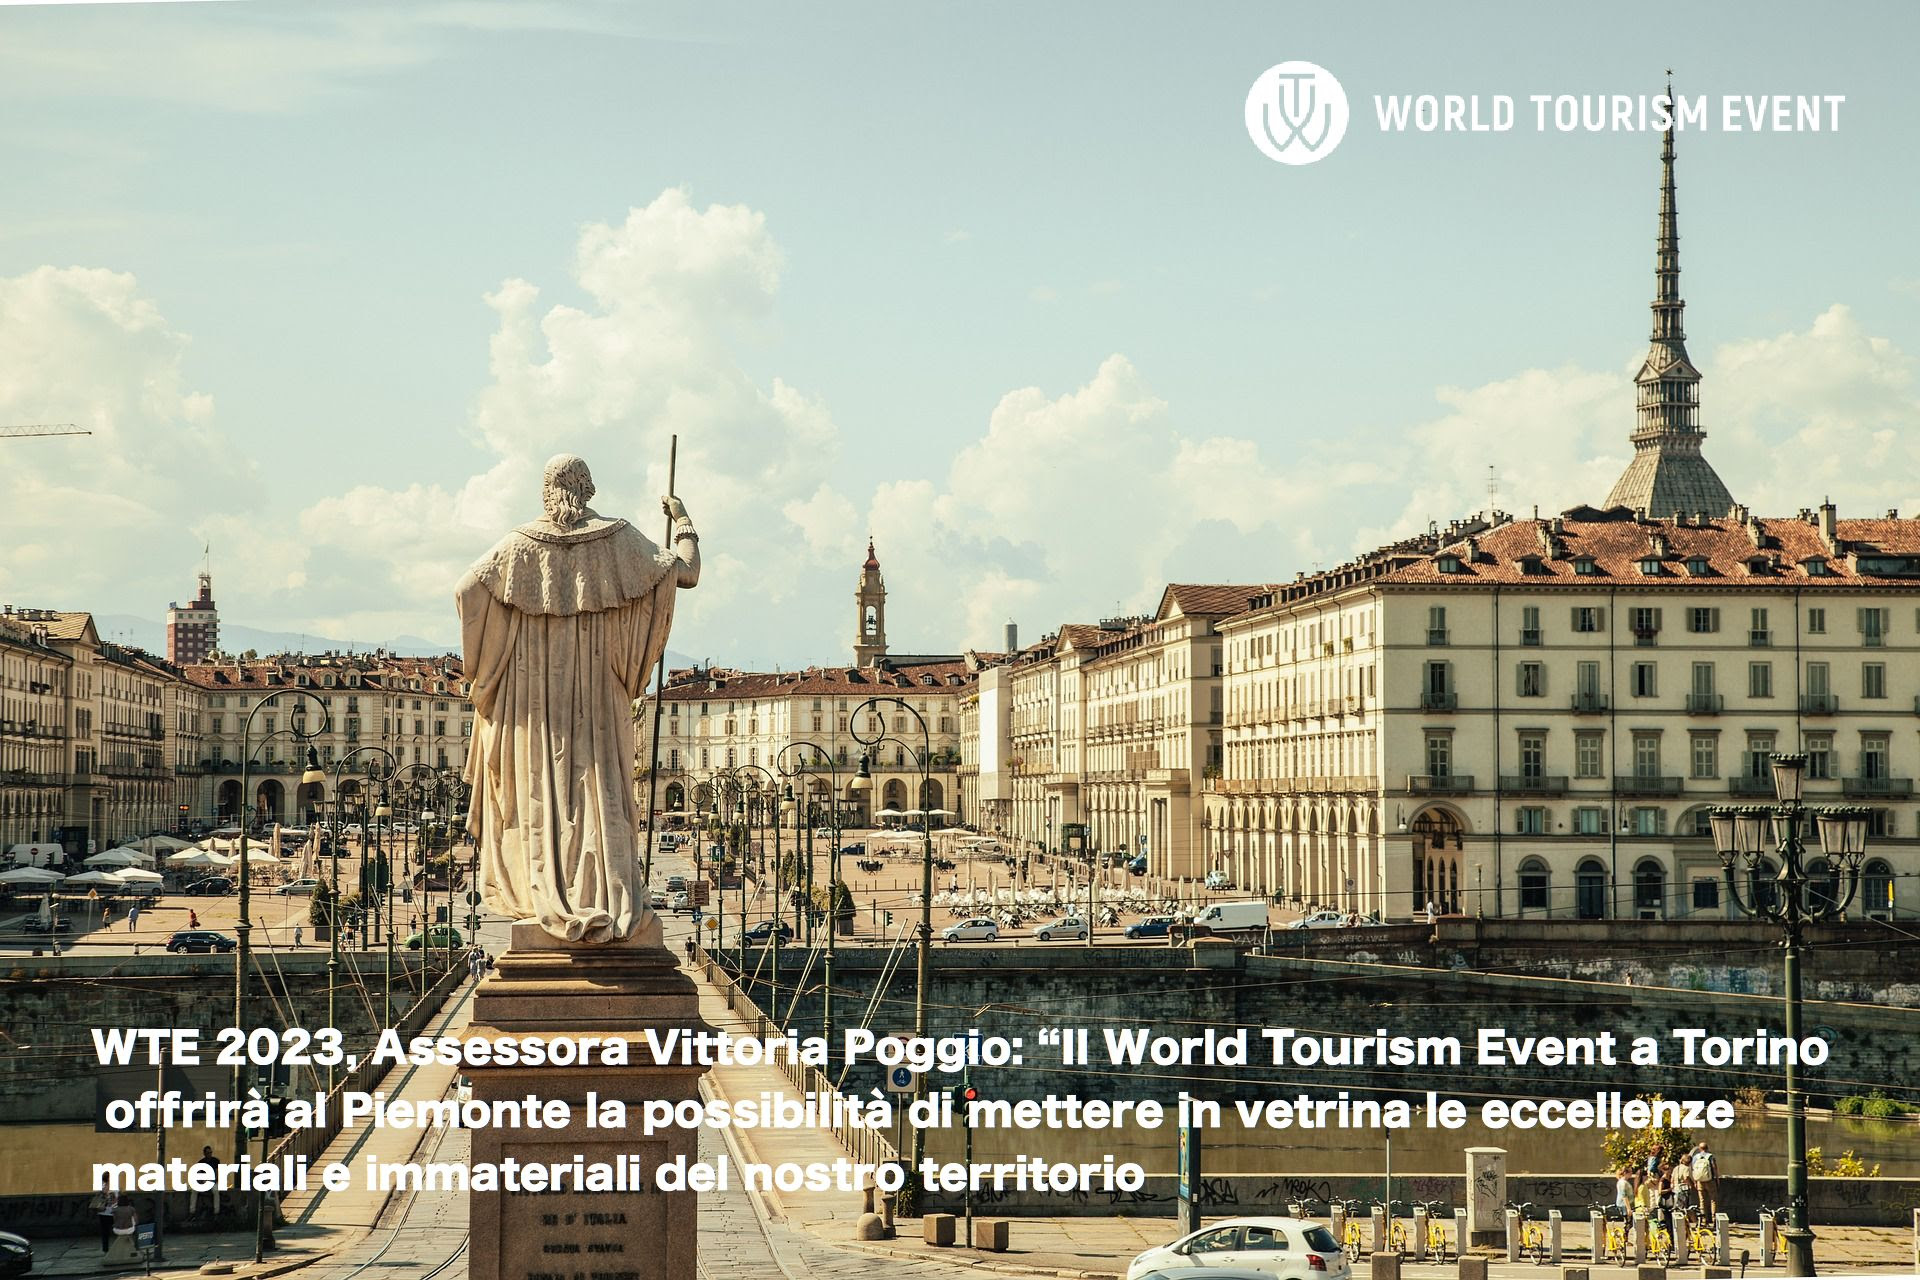 WTE 2023, Assessora Vittoria Poggio: “Il World Tourism Event a Torino offrirà al Piemonte la possibilità di mettere in vetrina le eccellenze materiali e immateriali del nostro territorio